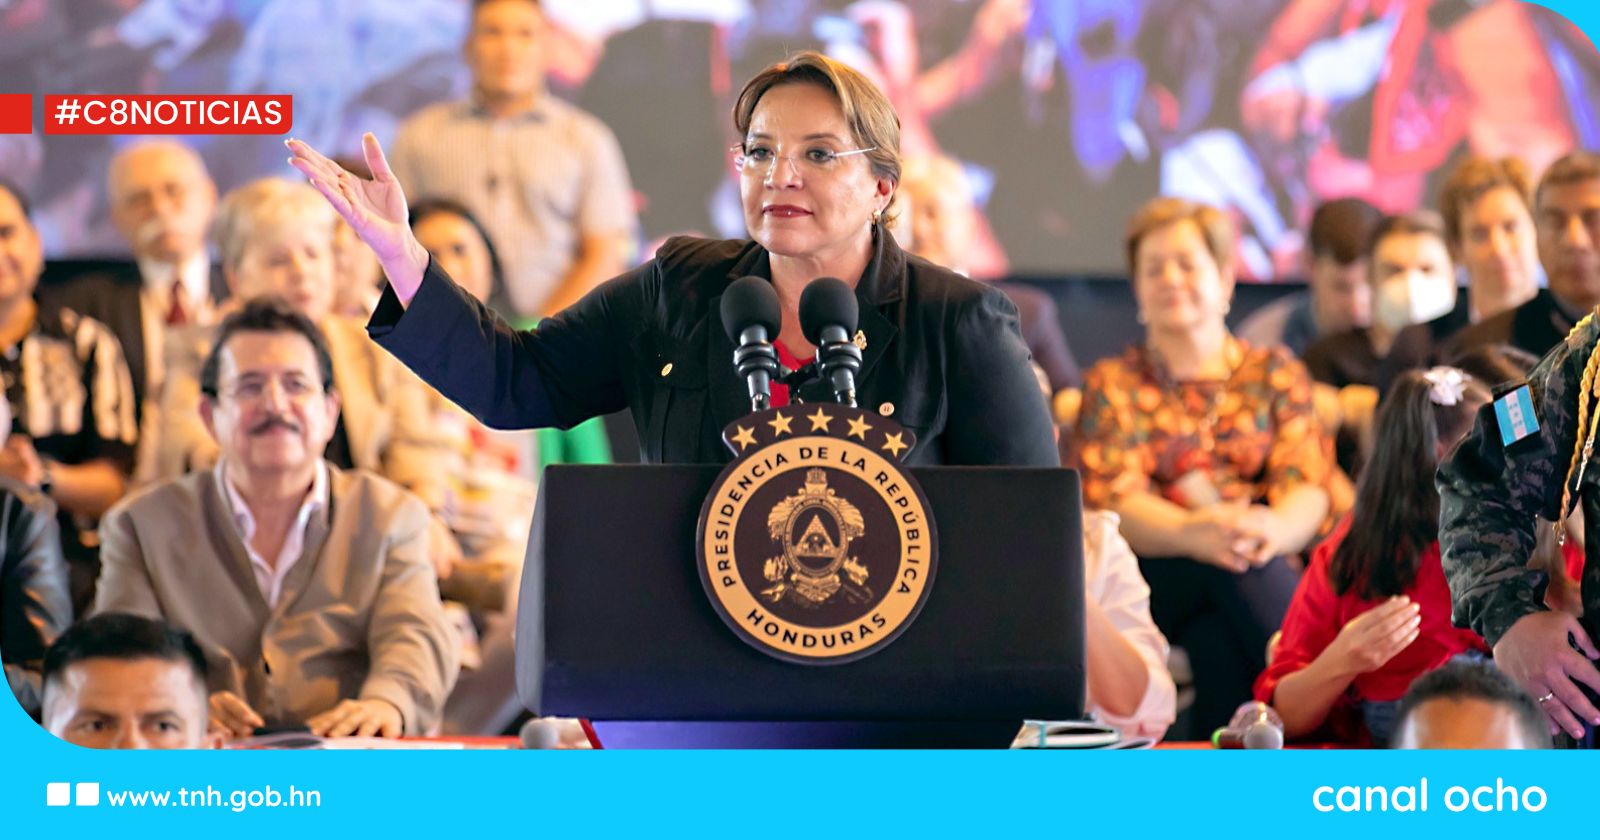 Presidenta Xiomara Castro: “Este día conmemoramos 15 años del fatídico golpe de Estado”